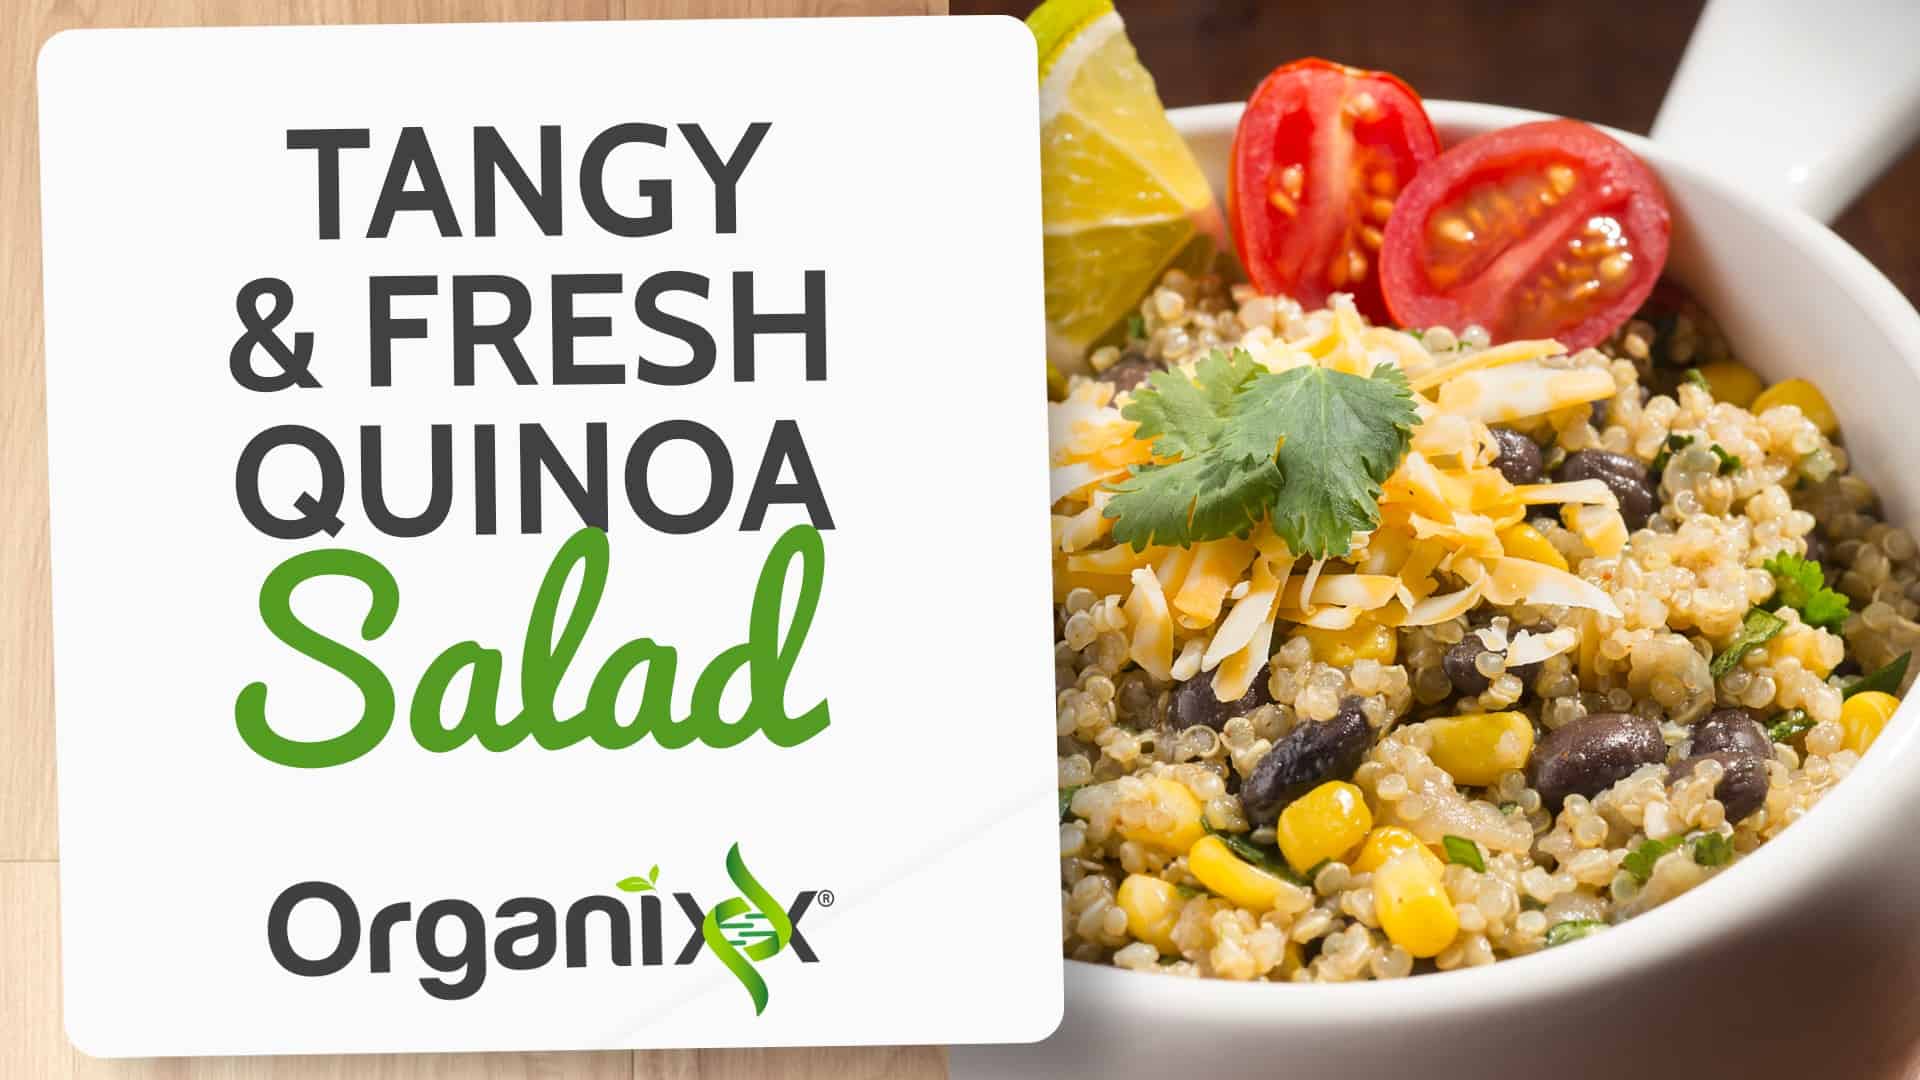 Tangy & Fresh Quinoa Salad